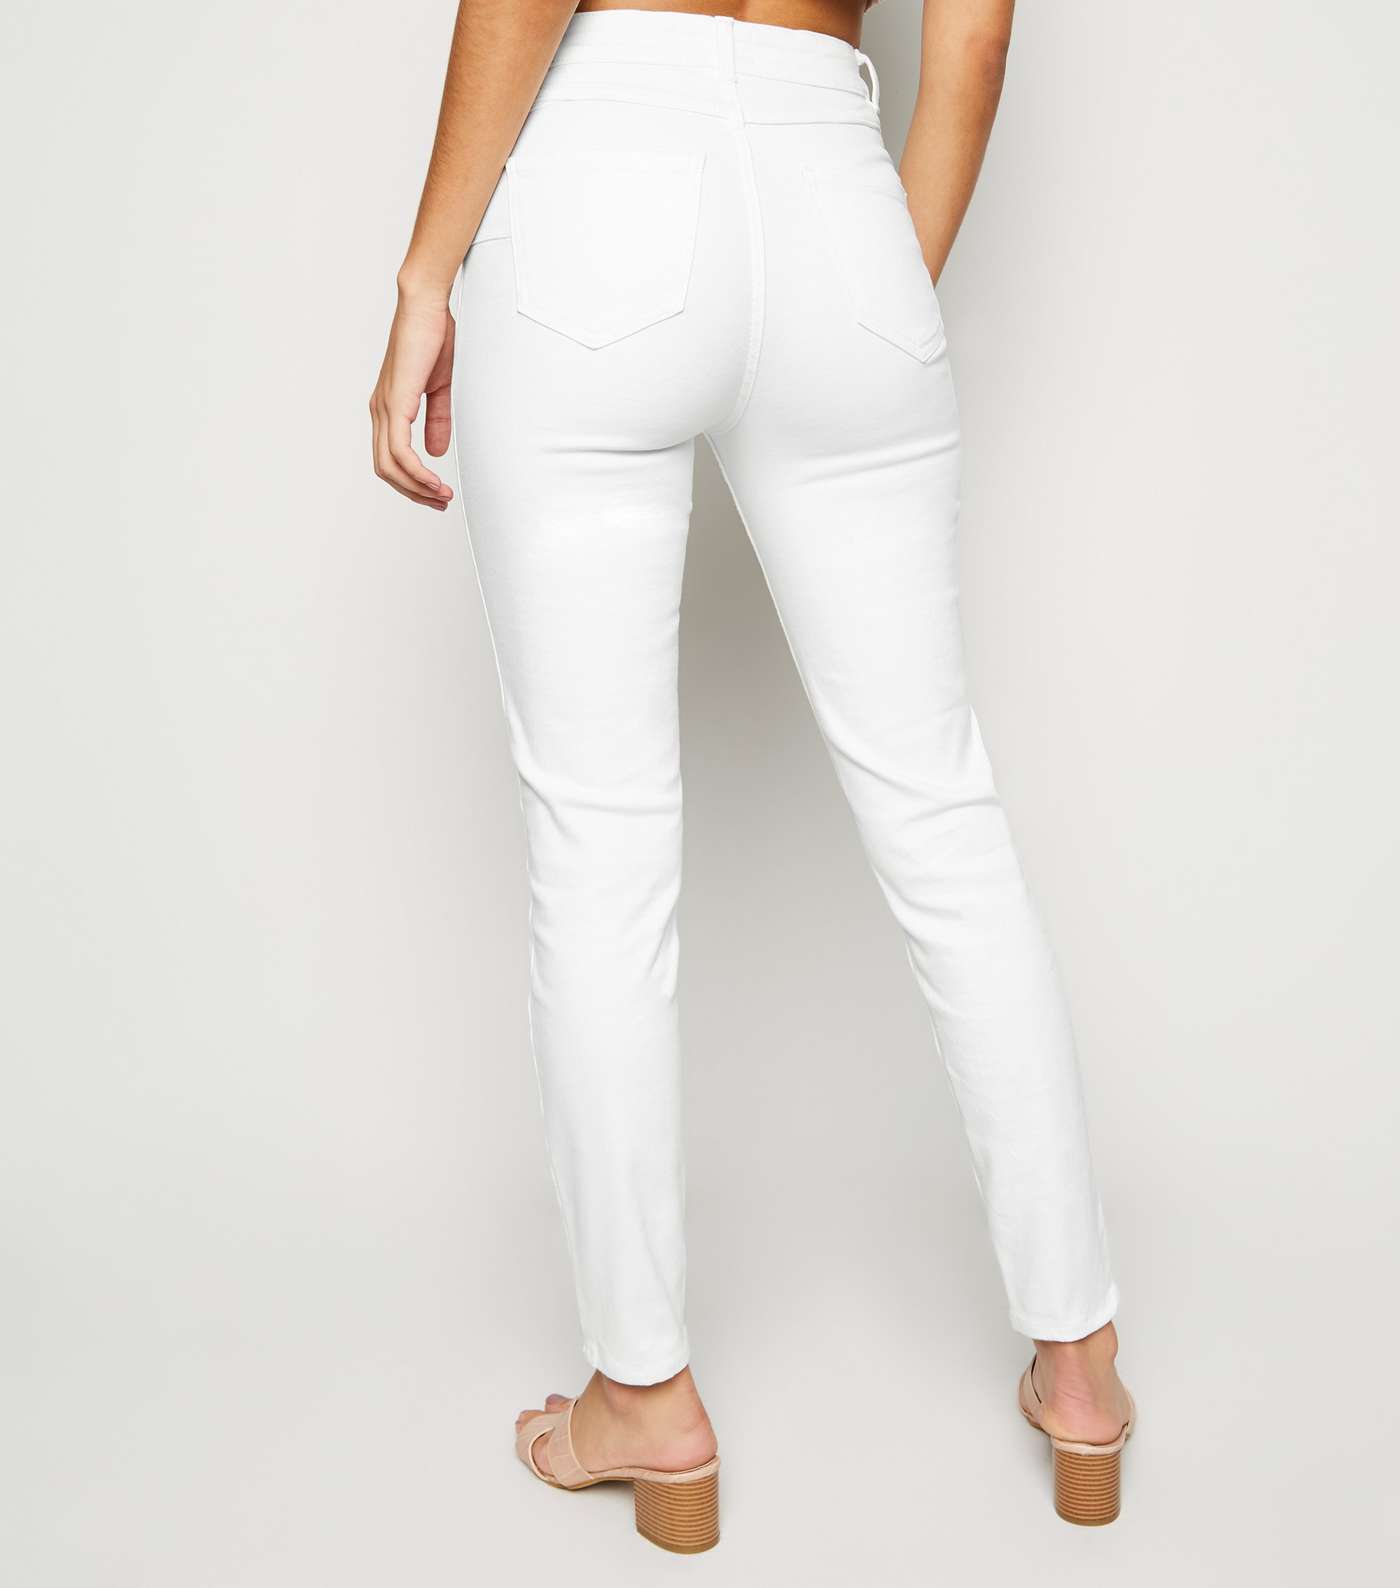 White High Waist 'Lift & Shape' Skinny Jeans Image 3